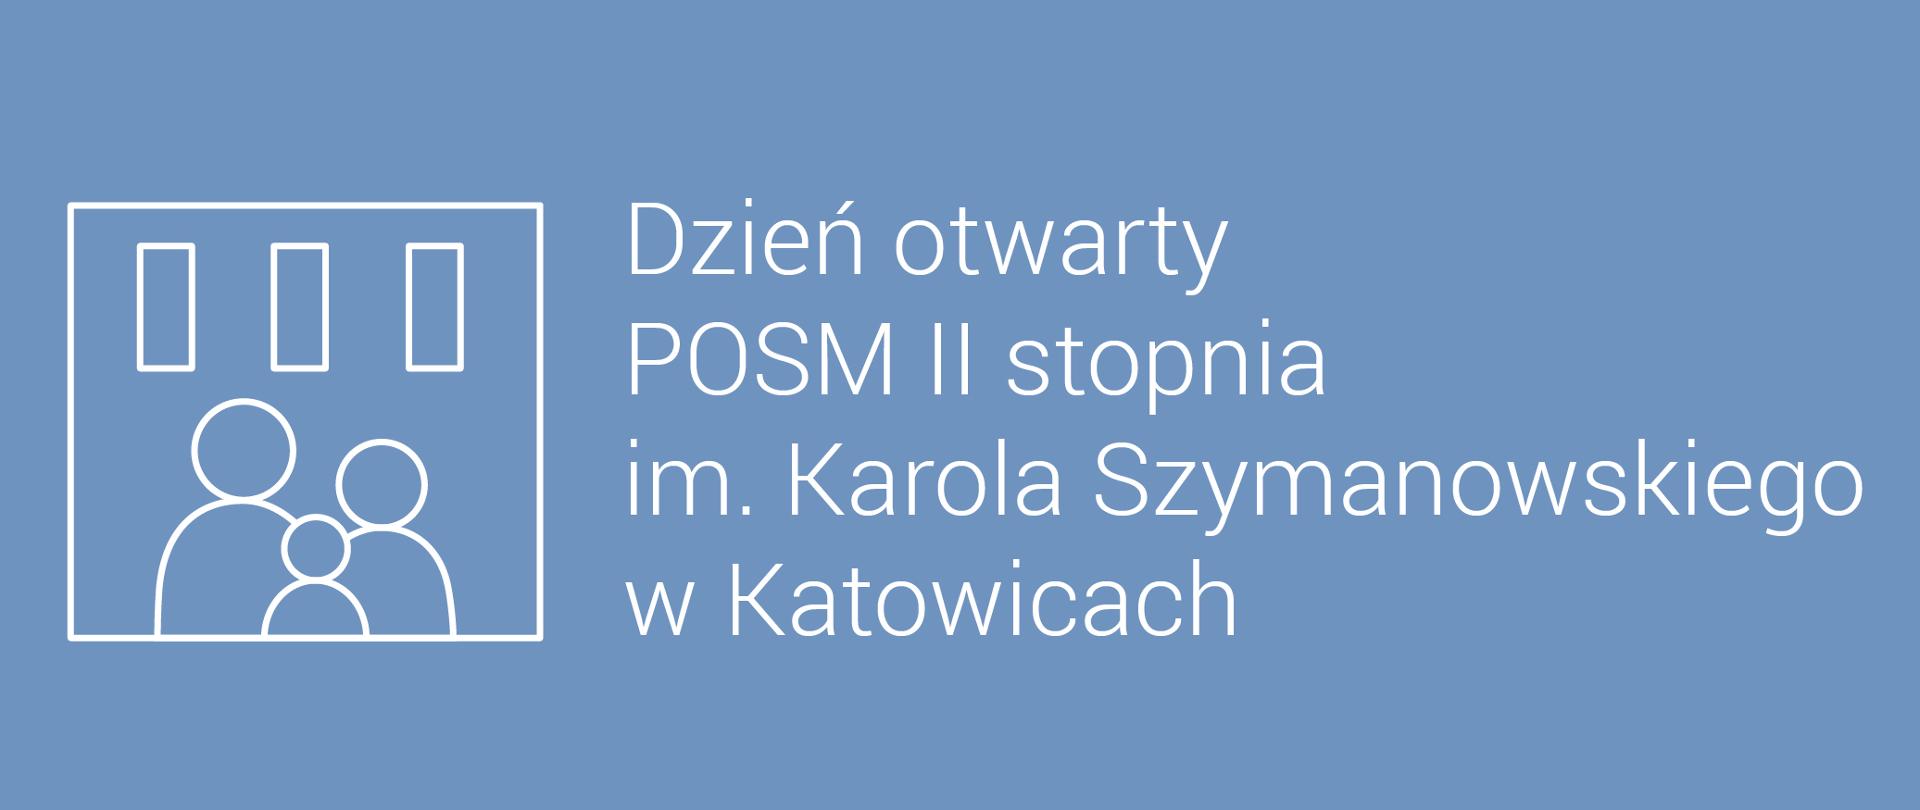 Biały napis "Dzień otwarty POSM II stopnia im. Karola Szymanowskiego w Katowicach" na niebieskim tle, z lewej strony piktogram rodziny w budynku